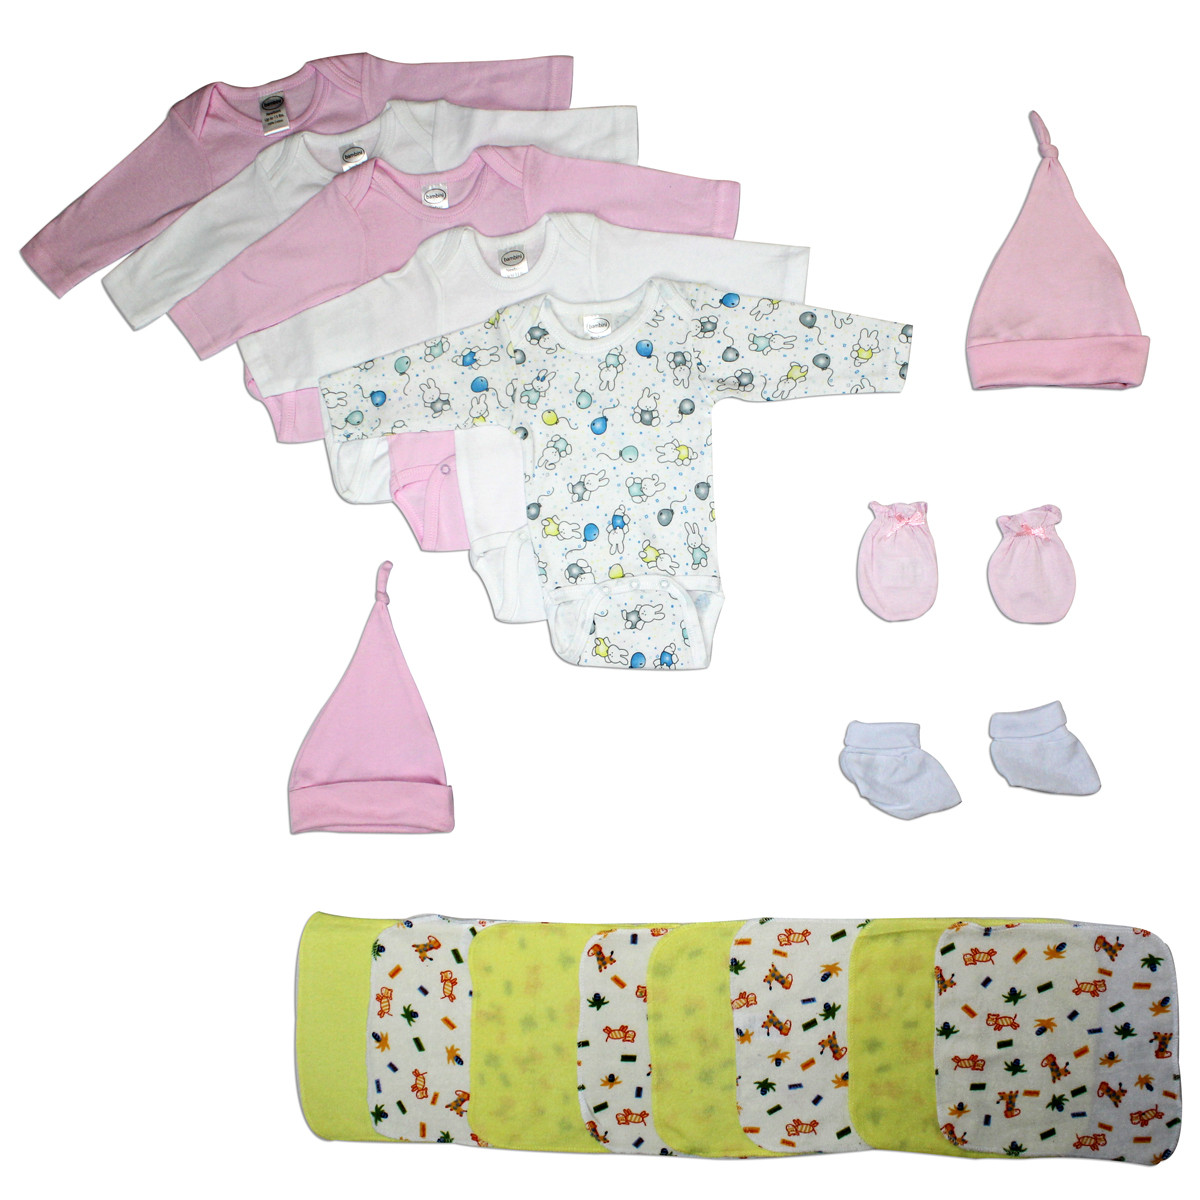 Baby Shower Gift Set
 Bambini Newborn Baby Girl 21 Pc Layette Baby Shower Gift Set